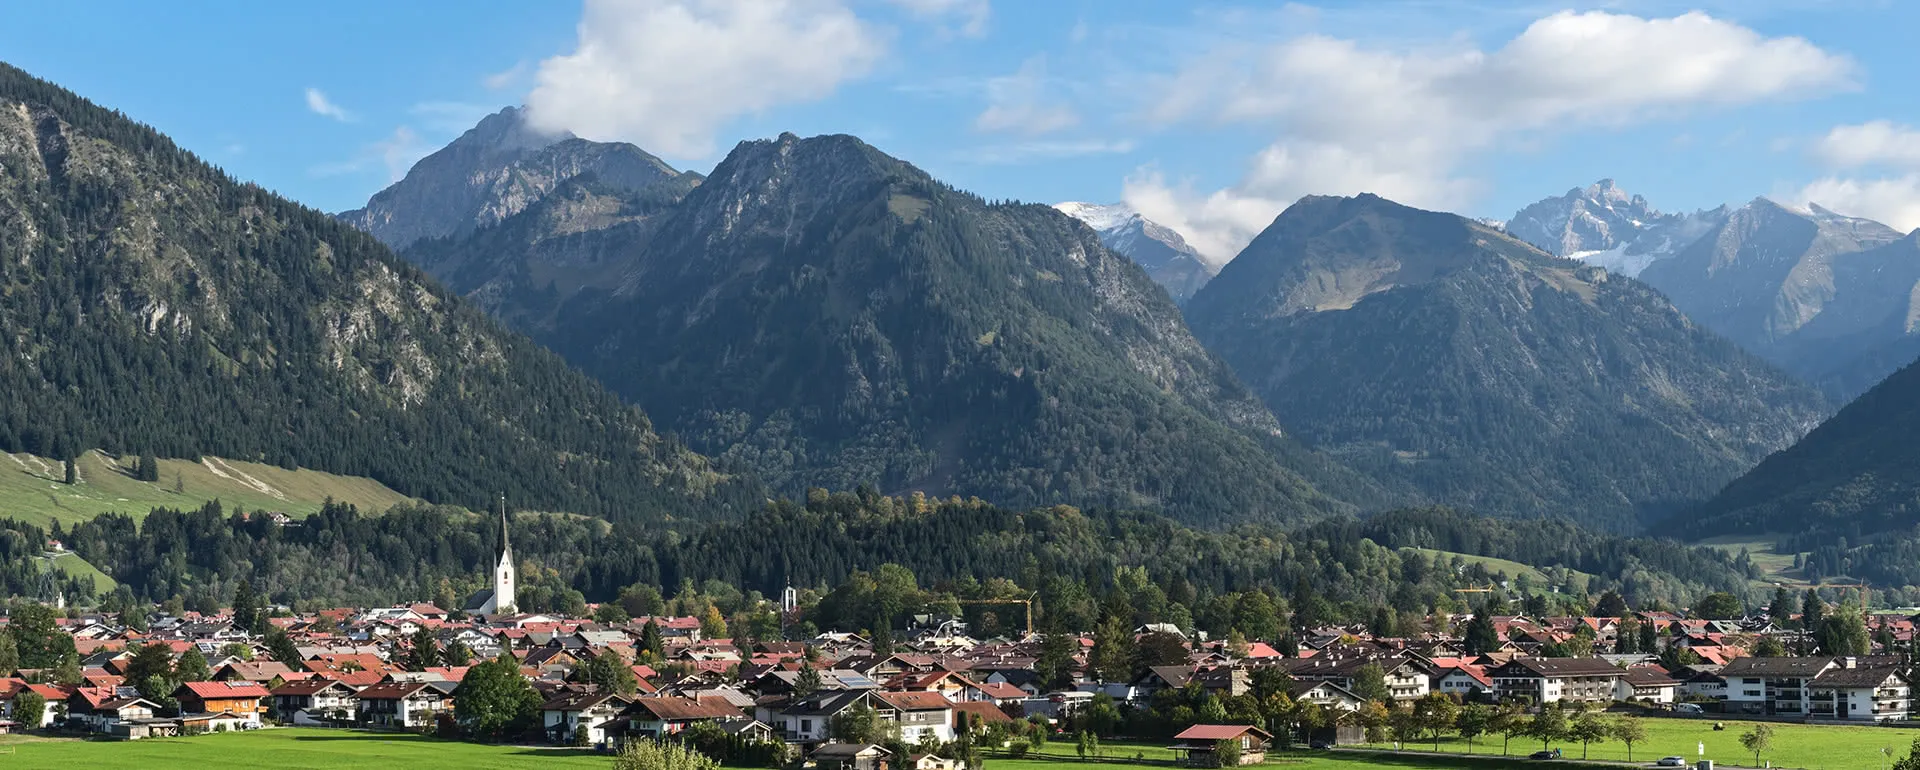 Oberstdorf - das Reiseziel mit Jugendherbergen